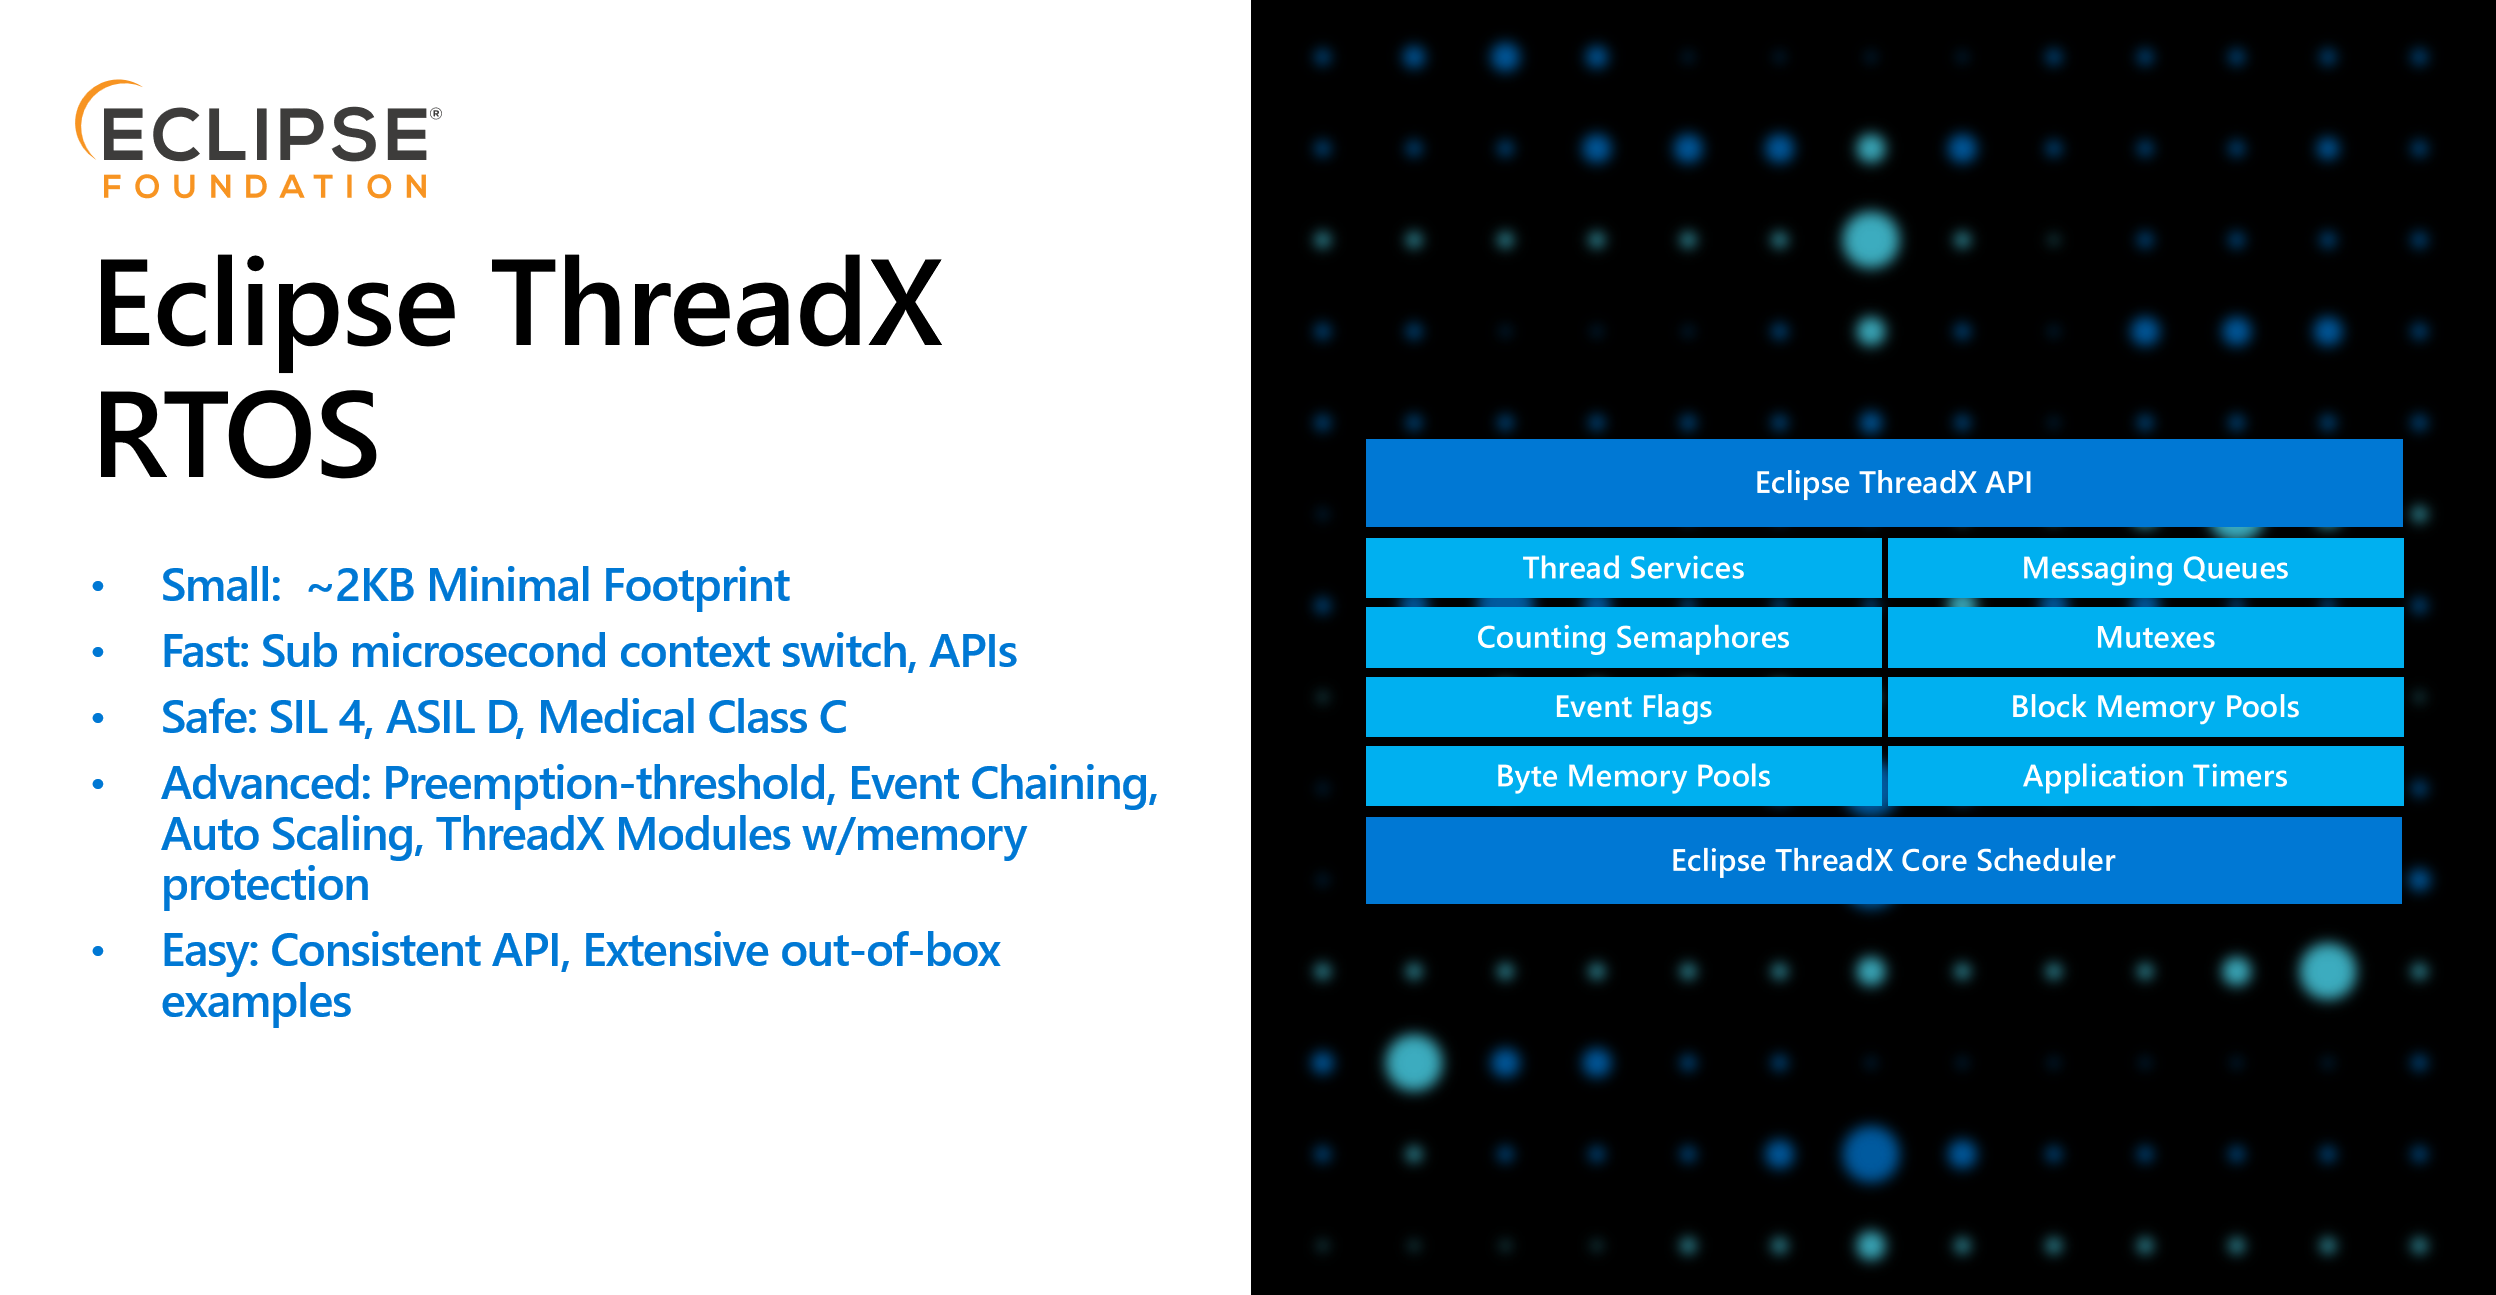 ThreadX Key Features